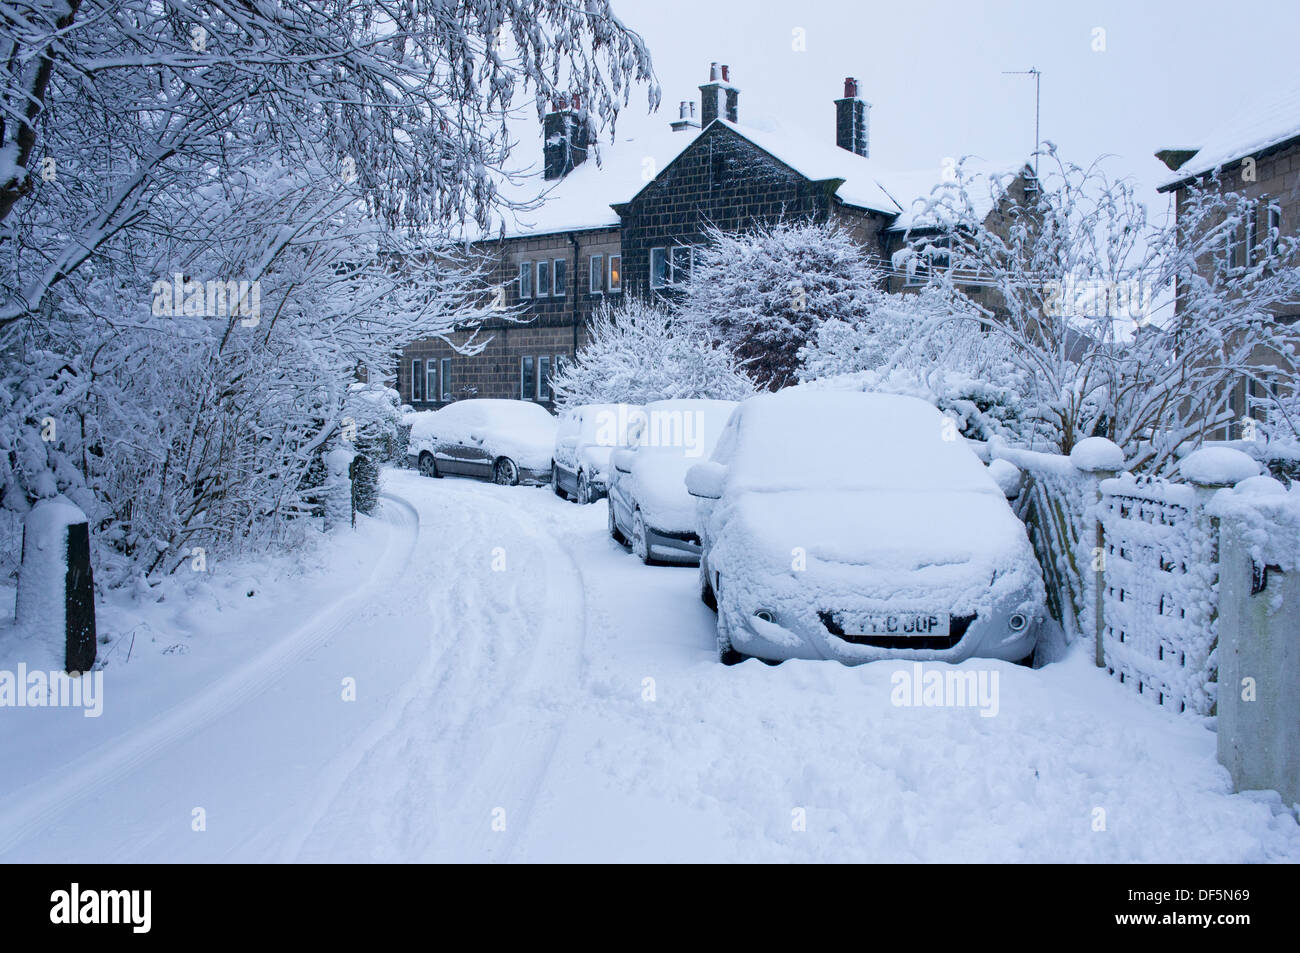 Scène d'hiver avec des voitures garées à l'extérieur de maisons jumelées sur rue résidentielle calme, tous couverts en couverture de neige fraîche - Guiseley, England, UK. Banque D'Images